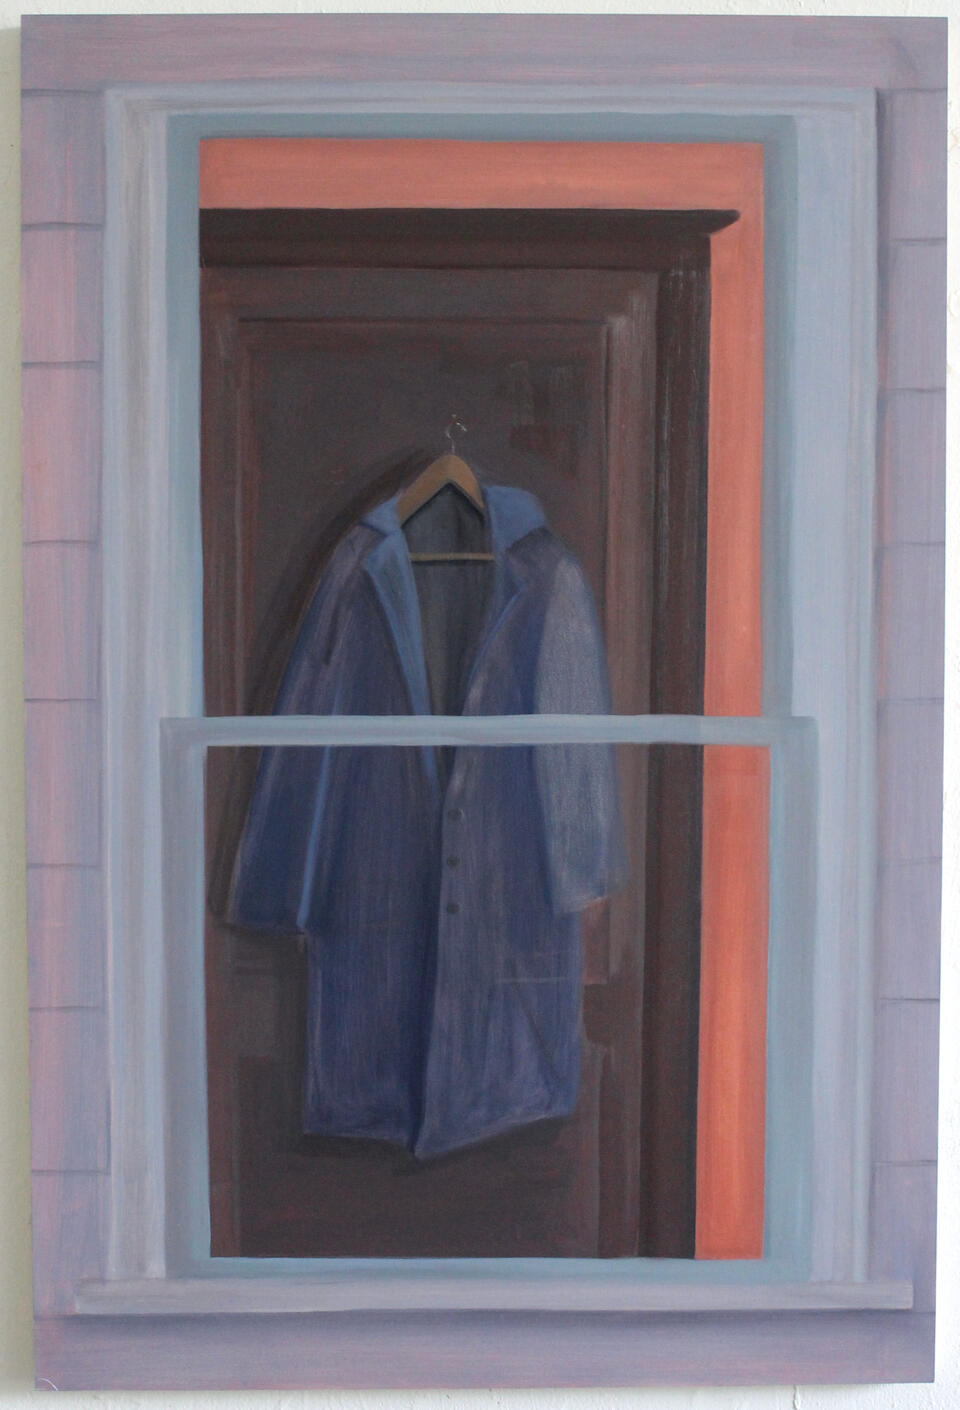 A coat hangs on a door, seen through a window.